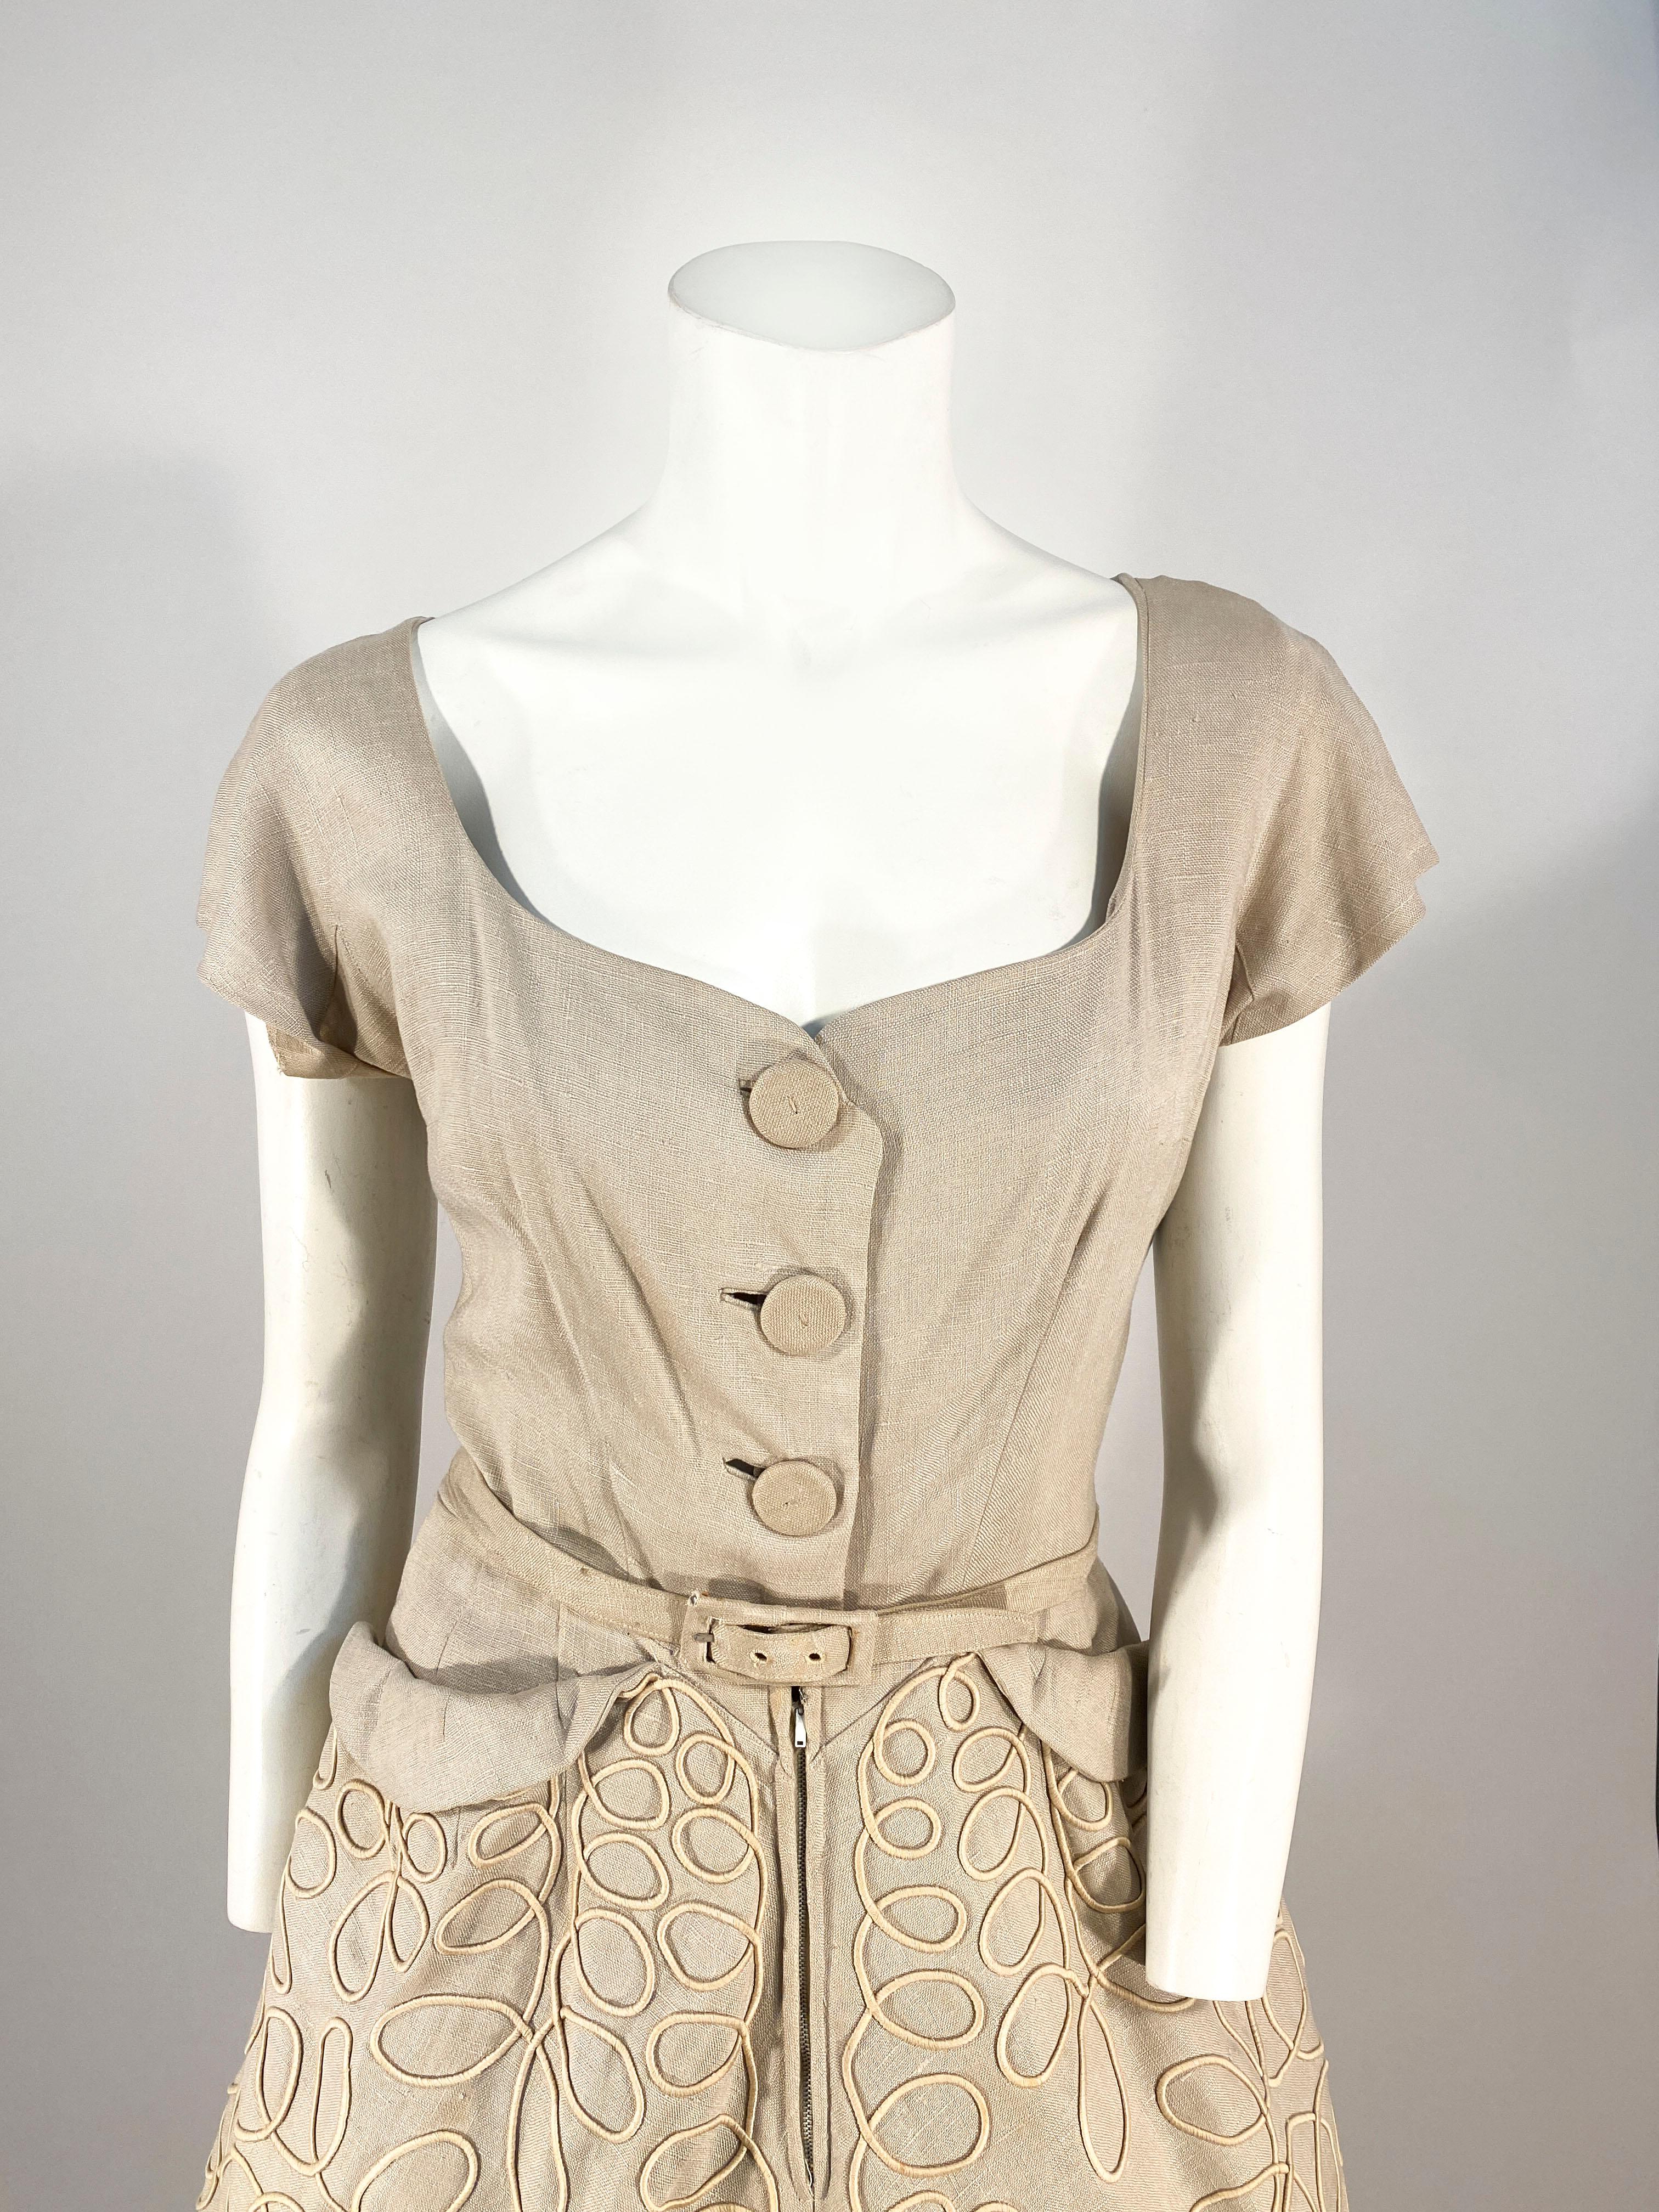 Robe de jour en lin beige des années 1950. Fermeture à bouton couvert sur le devant et fermeture à glissière cachée le long de la jupe. La jupe est ornée d'un passepoil décoratif qui couvre toute la surface de la jupe. Le corsage présente des